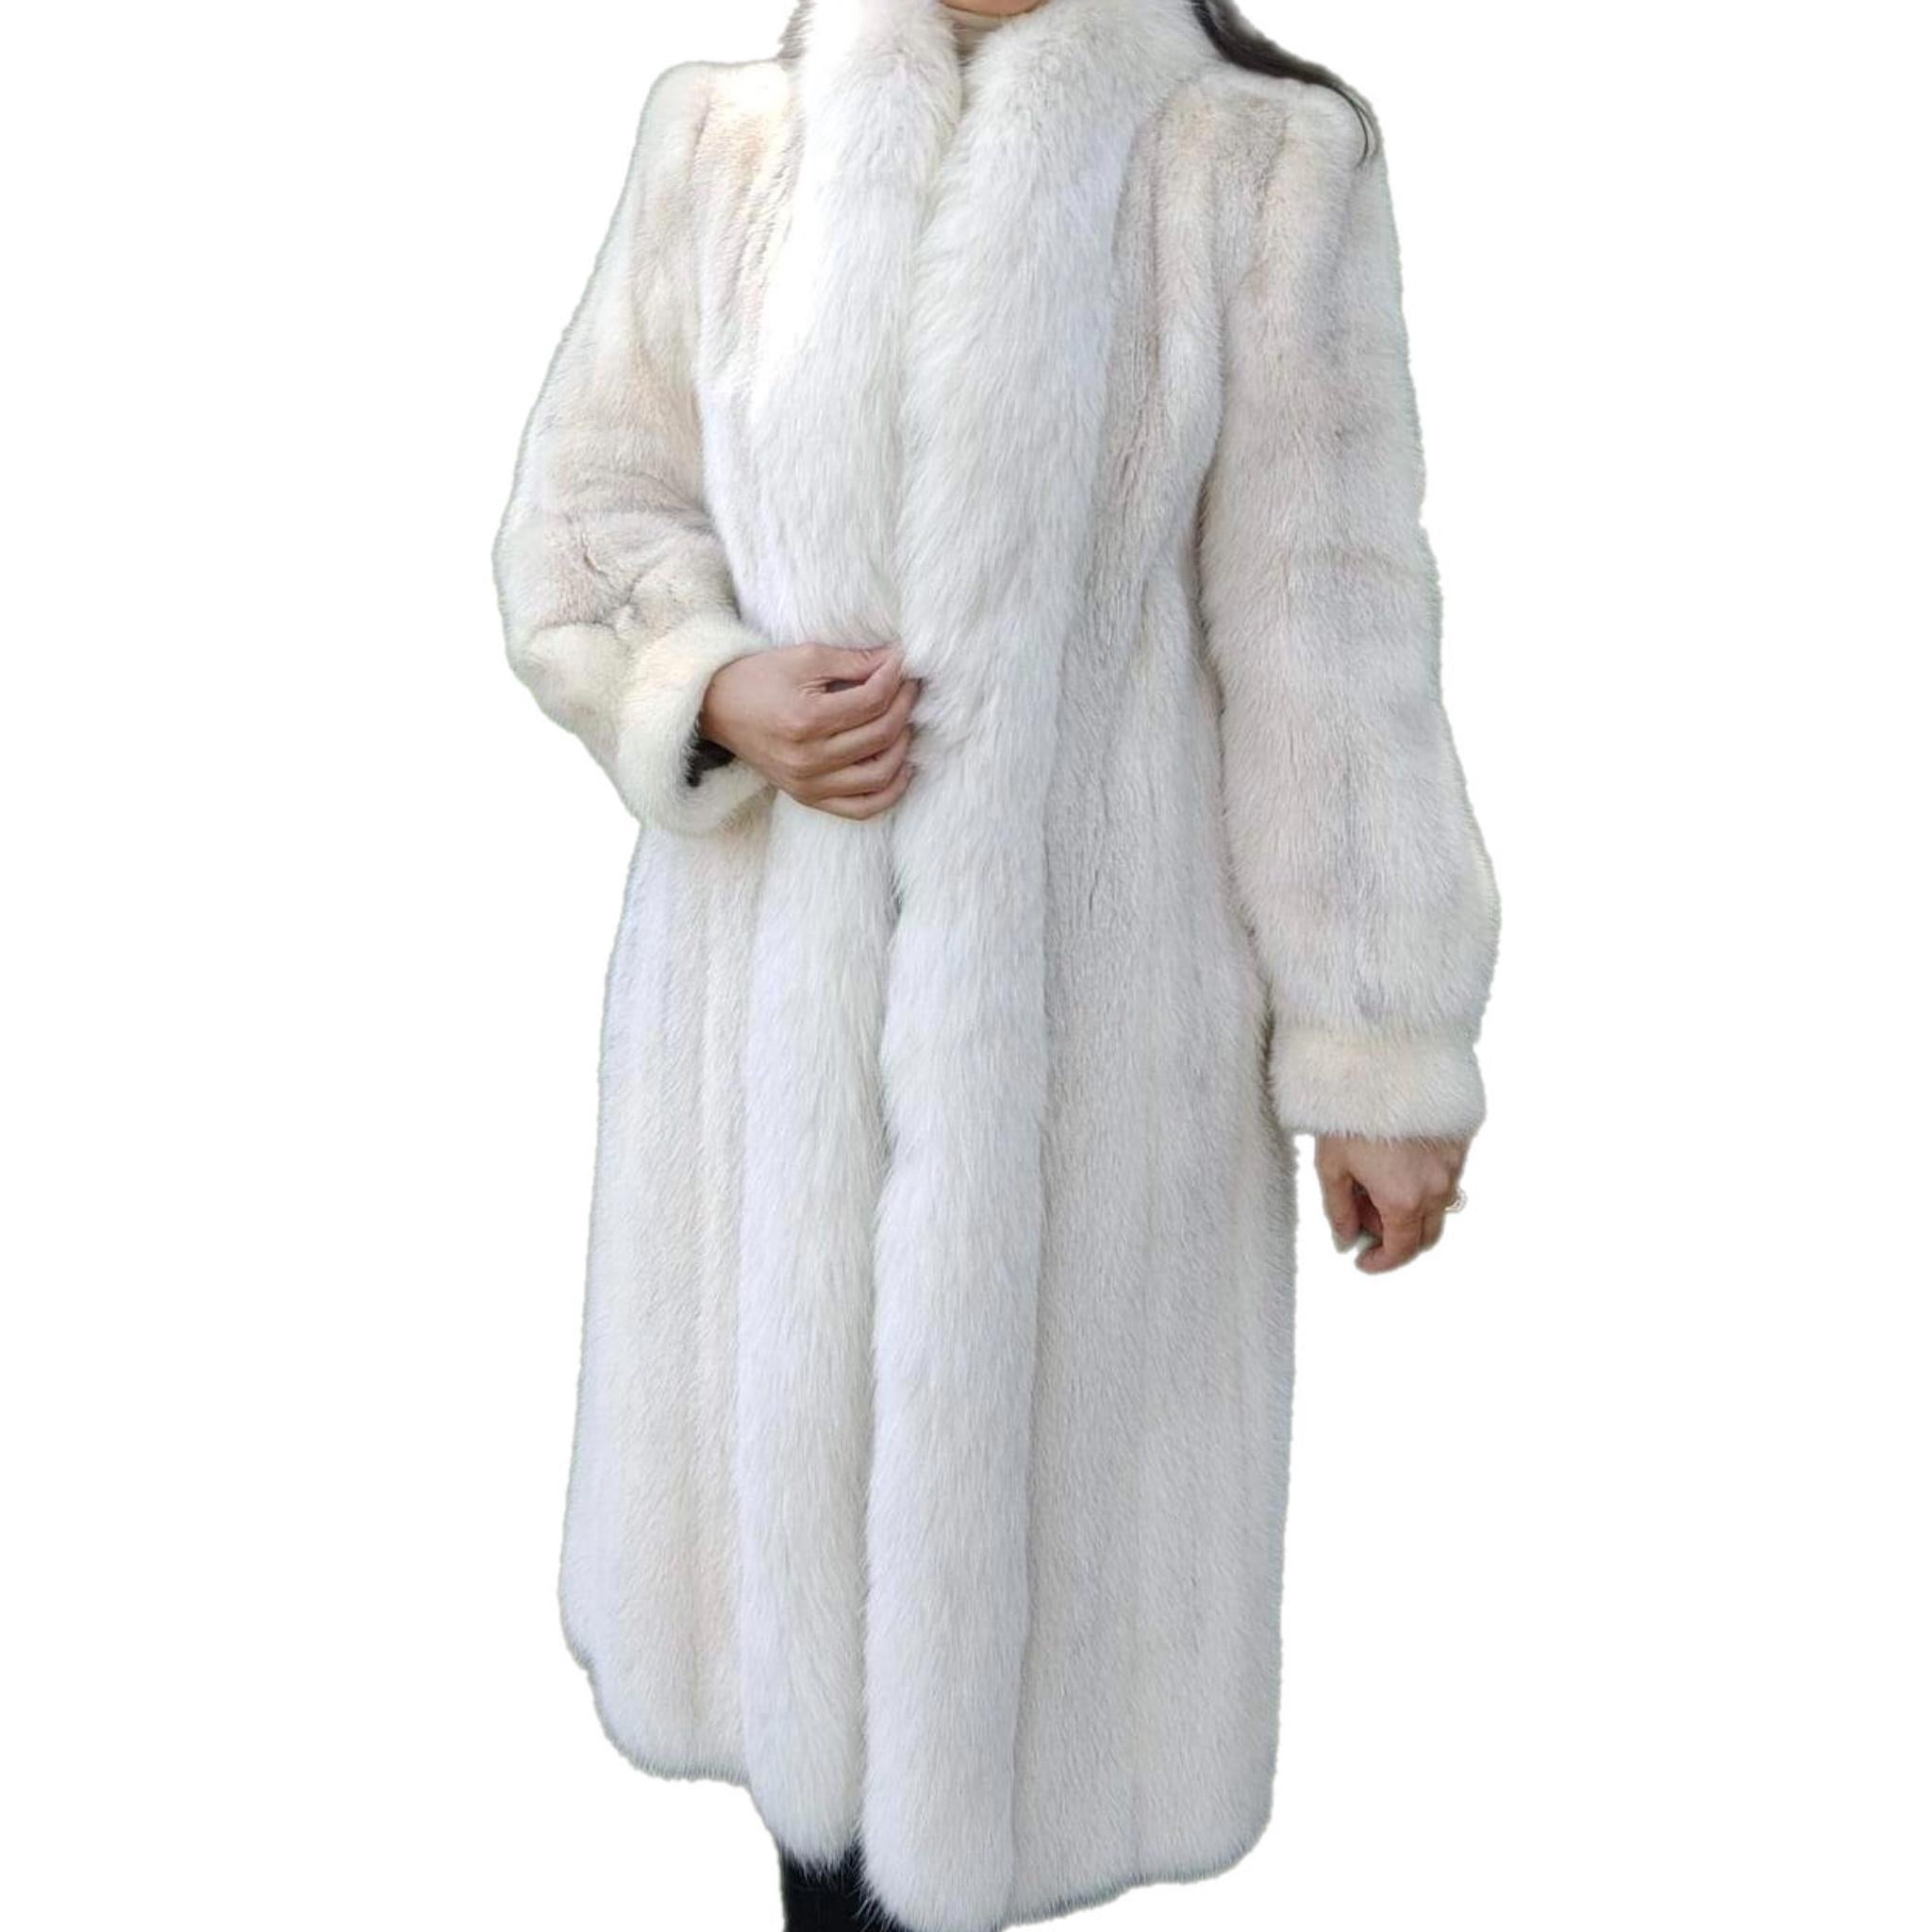 ~Manteau de fourrure blanche en vison (Taille 8 - M) Whiting 

En matière de fourrure, Canada Majestic est la référence ultime en termes de qualité et de style. Ce superbe manteau de vison croisé est un classique avec son design de smoking et ses